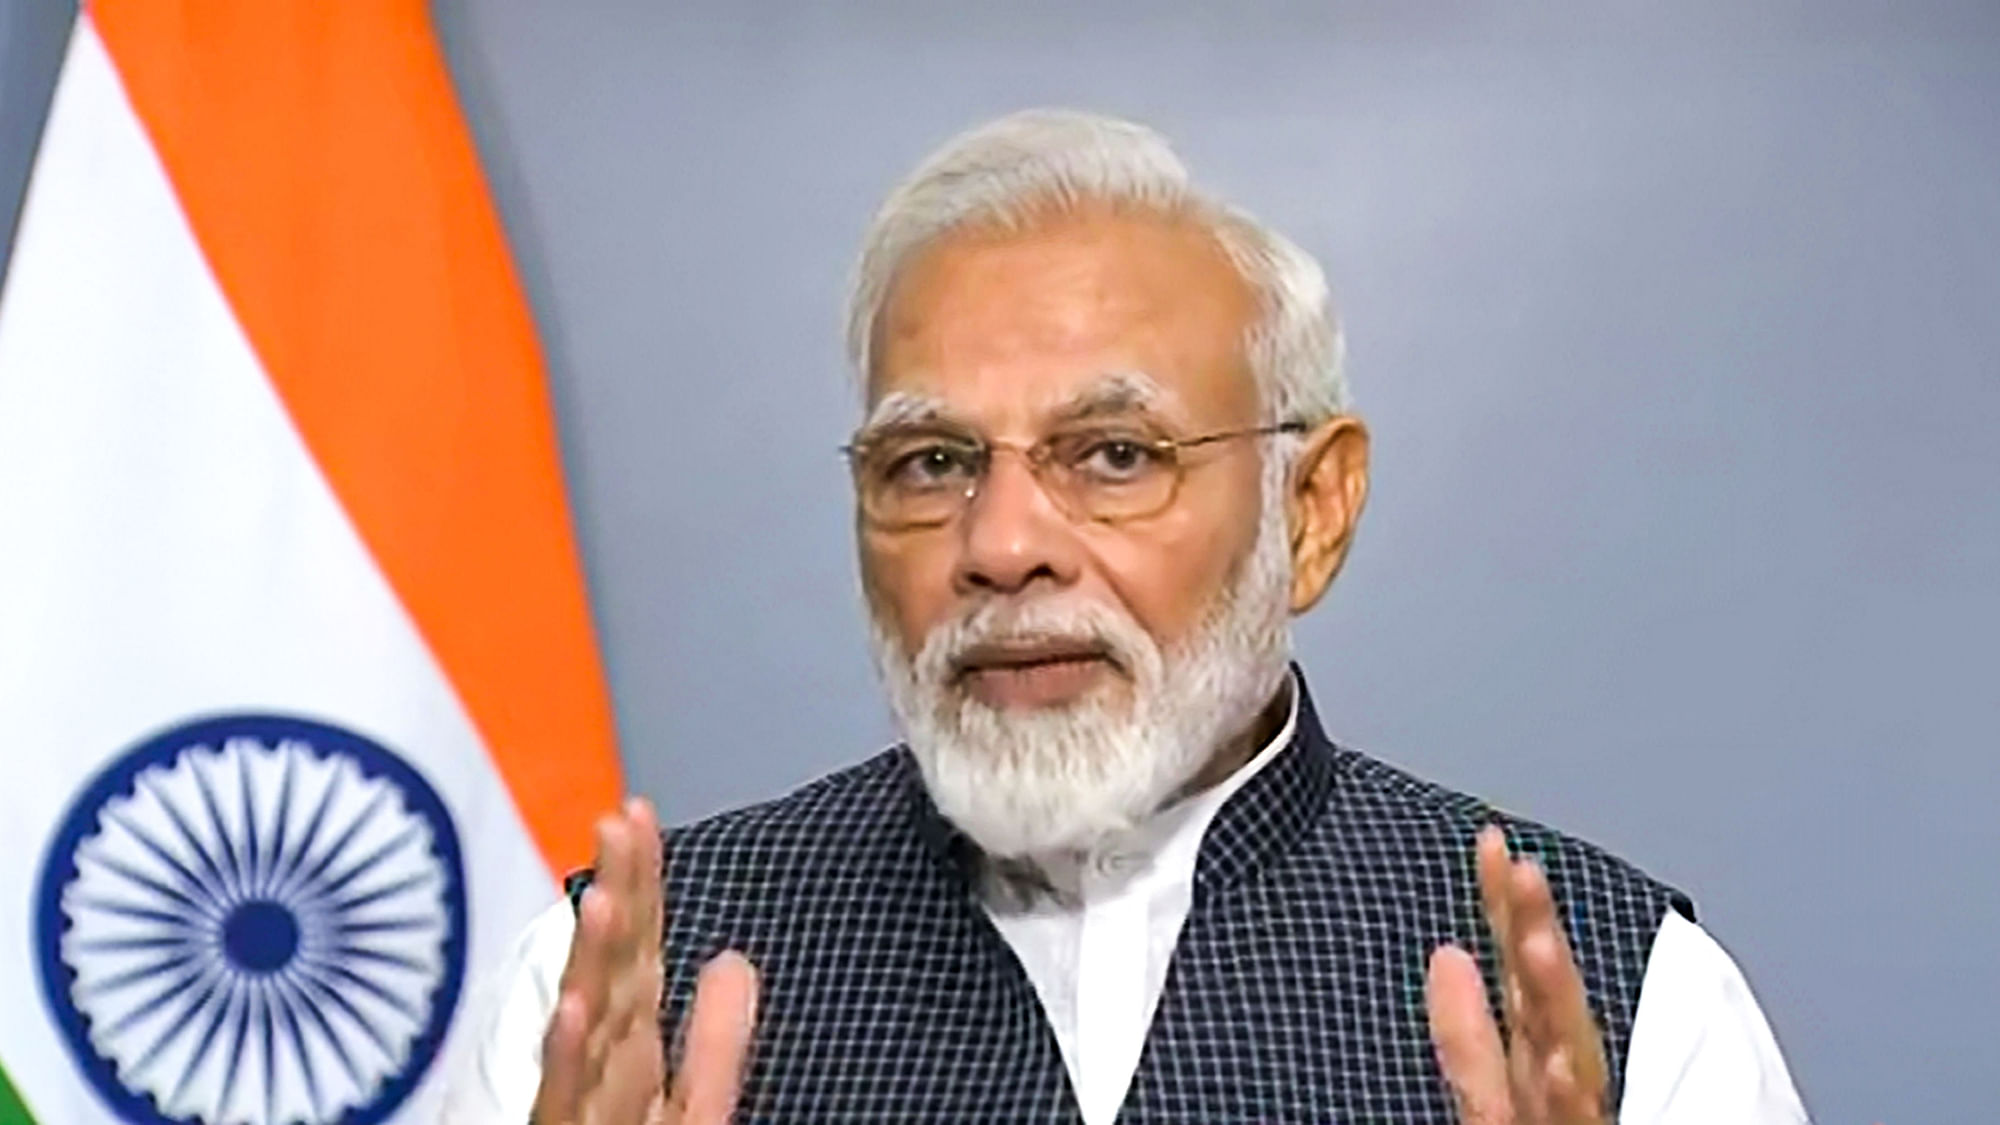 Prime Minister Narendra Modi addressing the nation, in New Delhi, on Thursday, 8 August 2019.